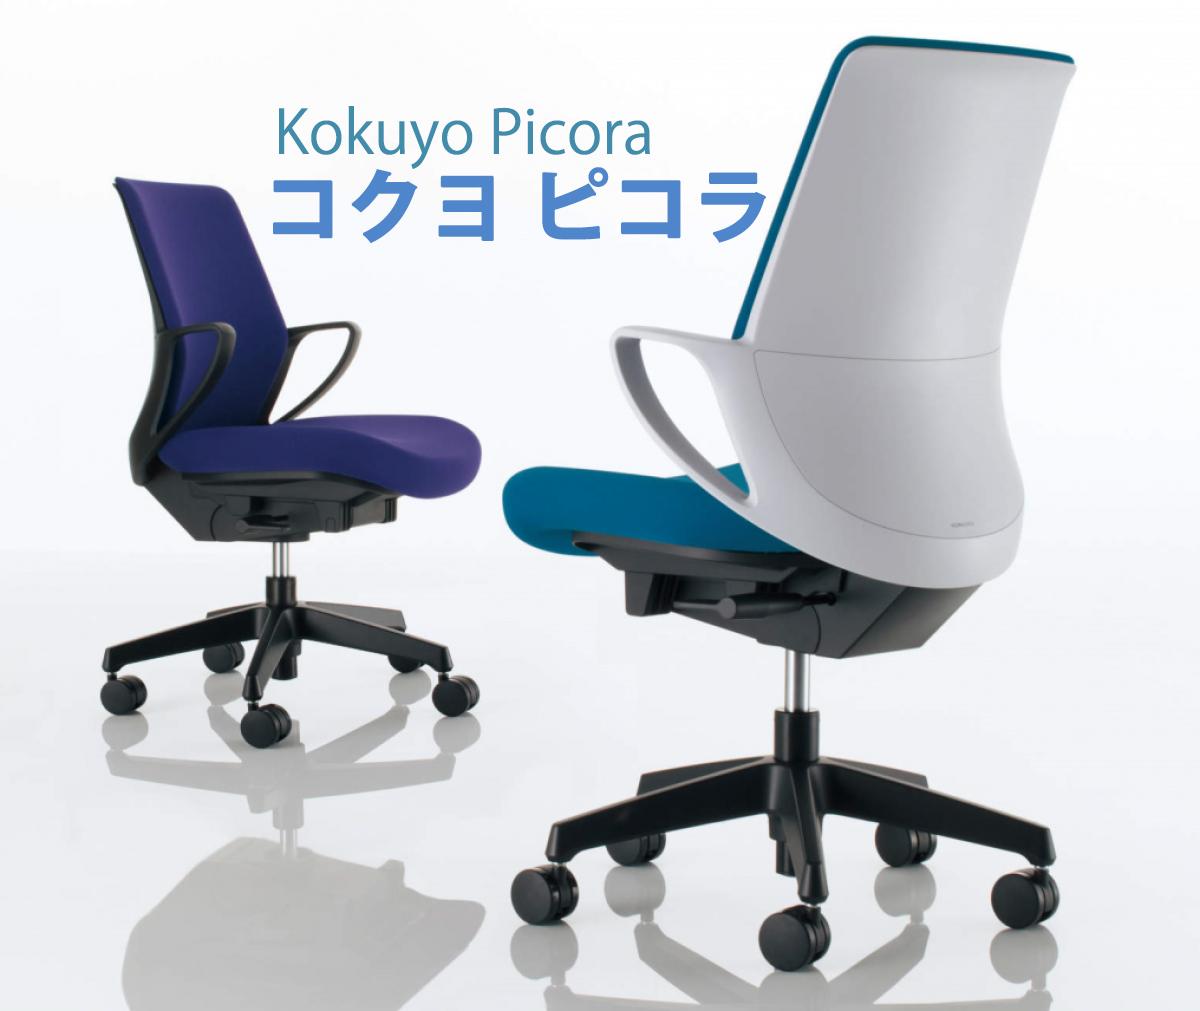 事務用椅子picoraについて紹介させて頂きます。

